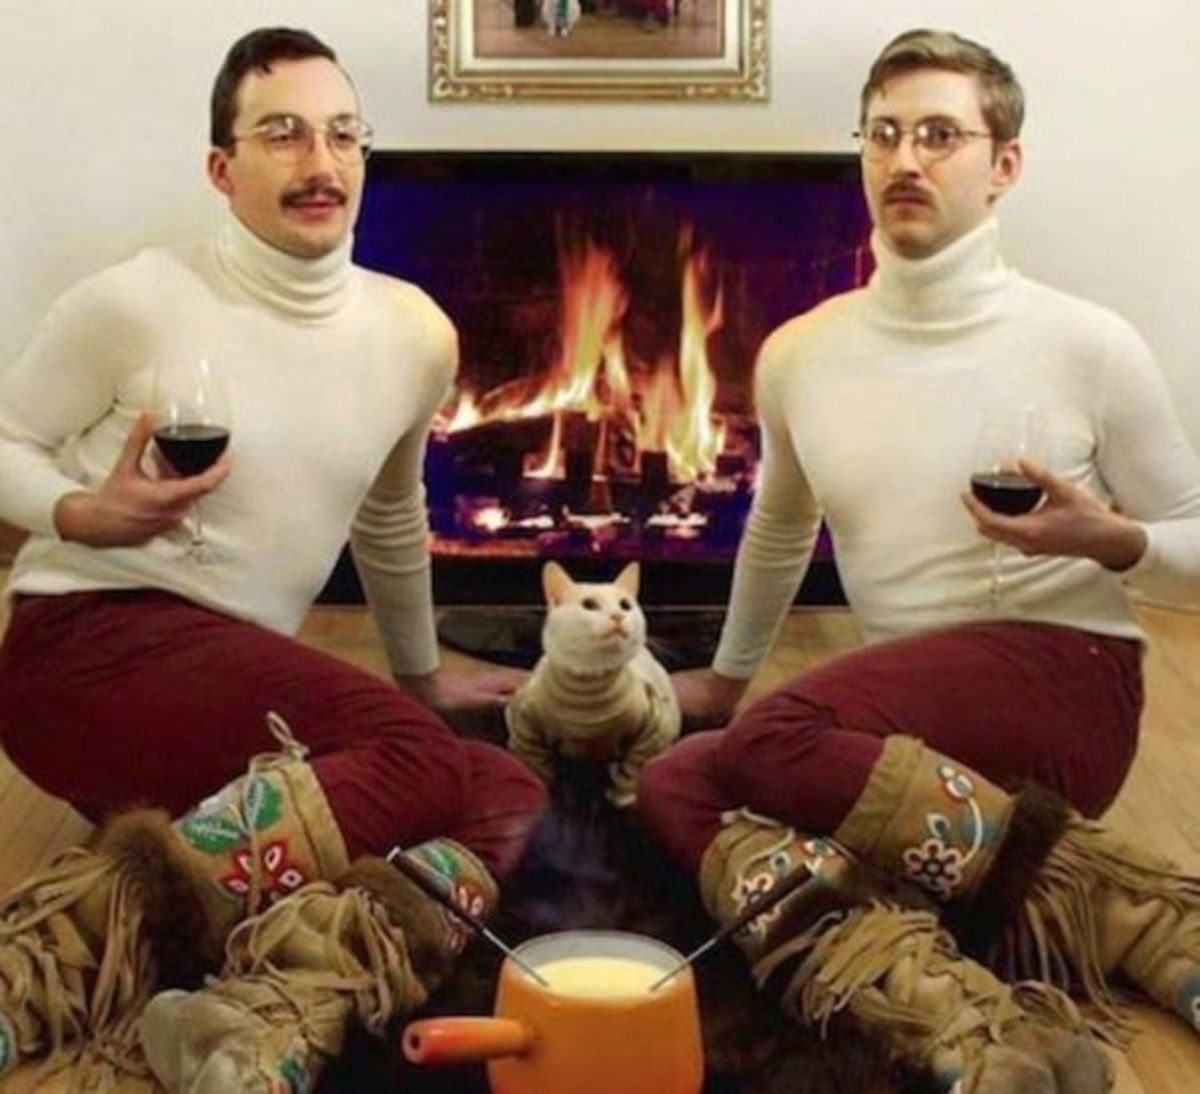 Ναι, είναι μόνο τα πουλόβερ που κάνουν αυτή την εικόνα να φαίνεται περίεργη.